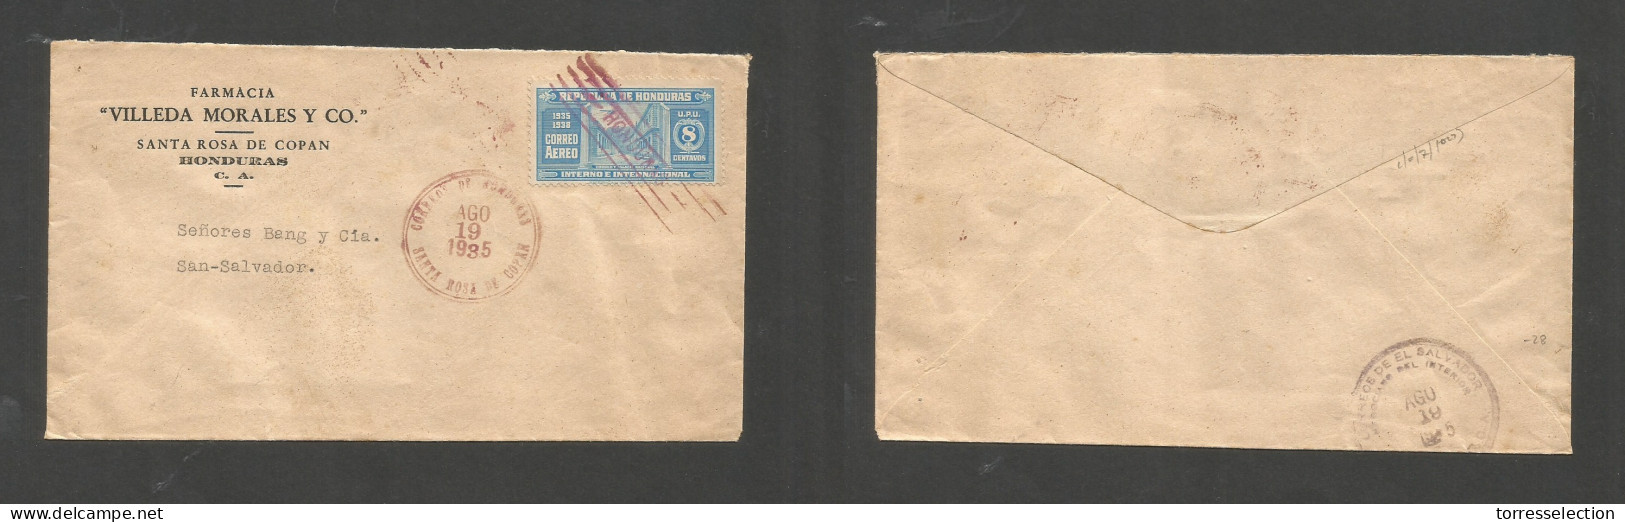 HONDURAS. 1935 (19 Aug) Santa Rosa De Copan - Salvador (18 Aug) Same Day Circulation. Comercial Usage. Rare Postal Conne - Honduras